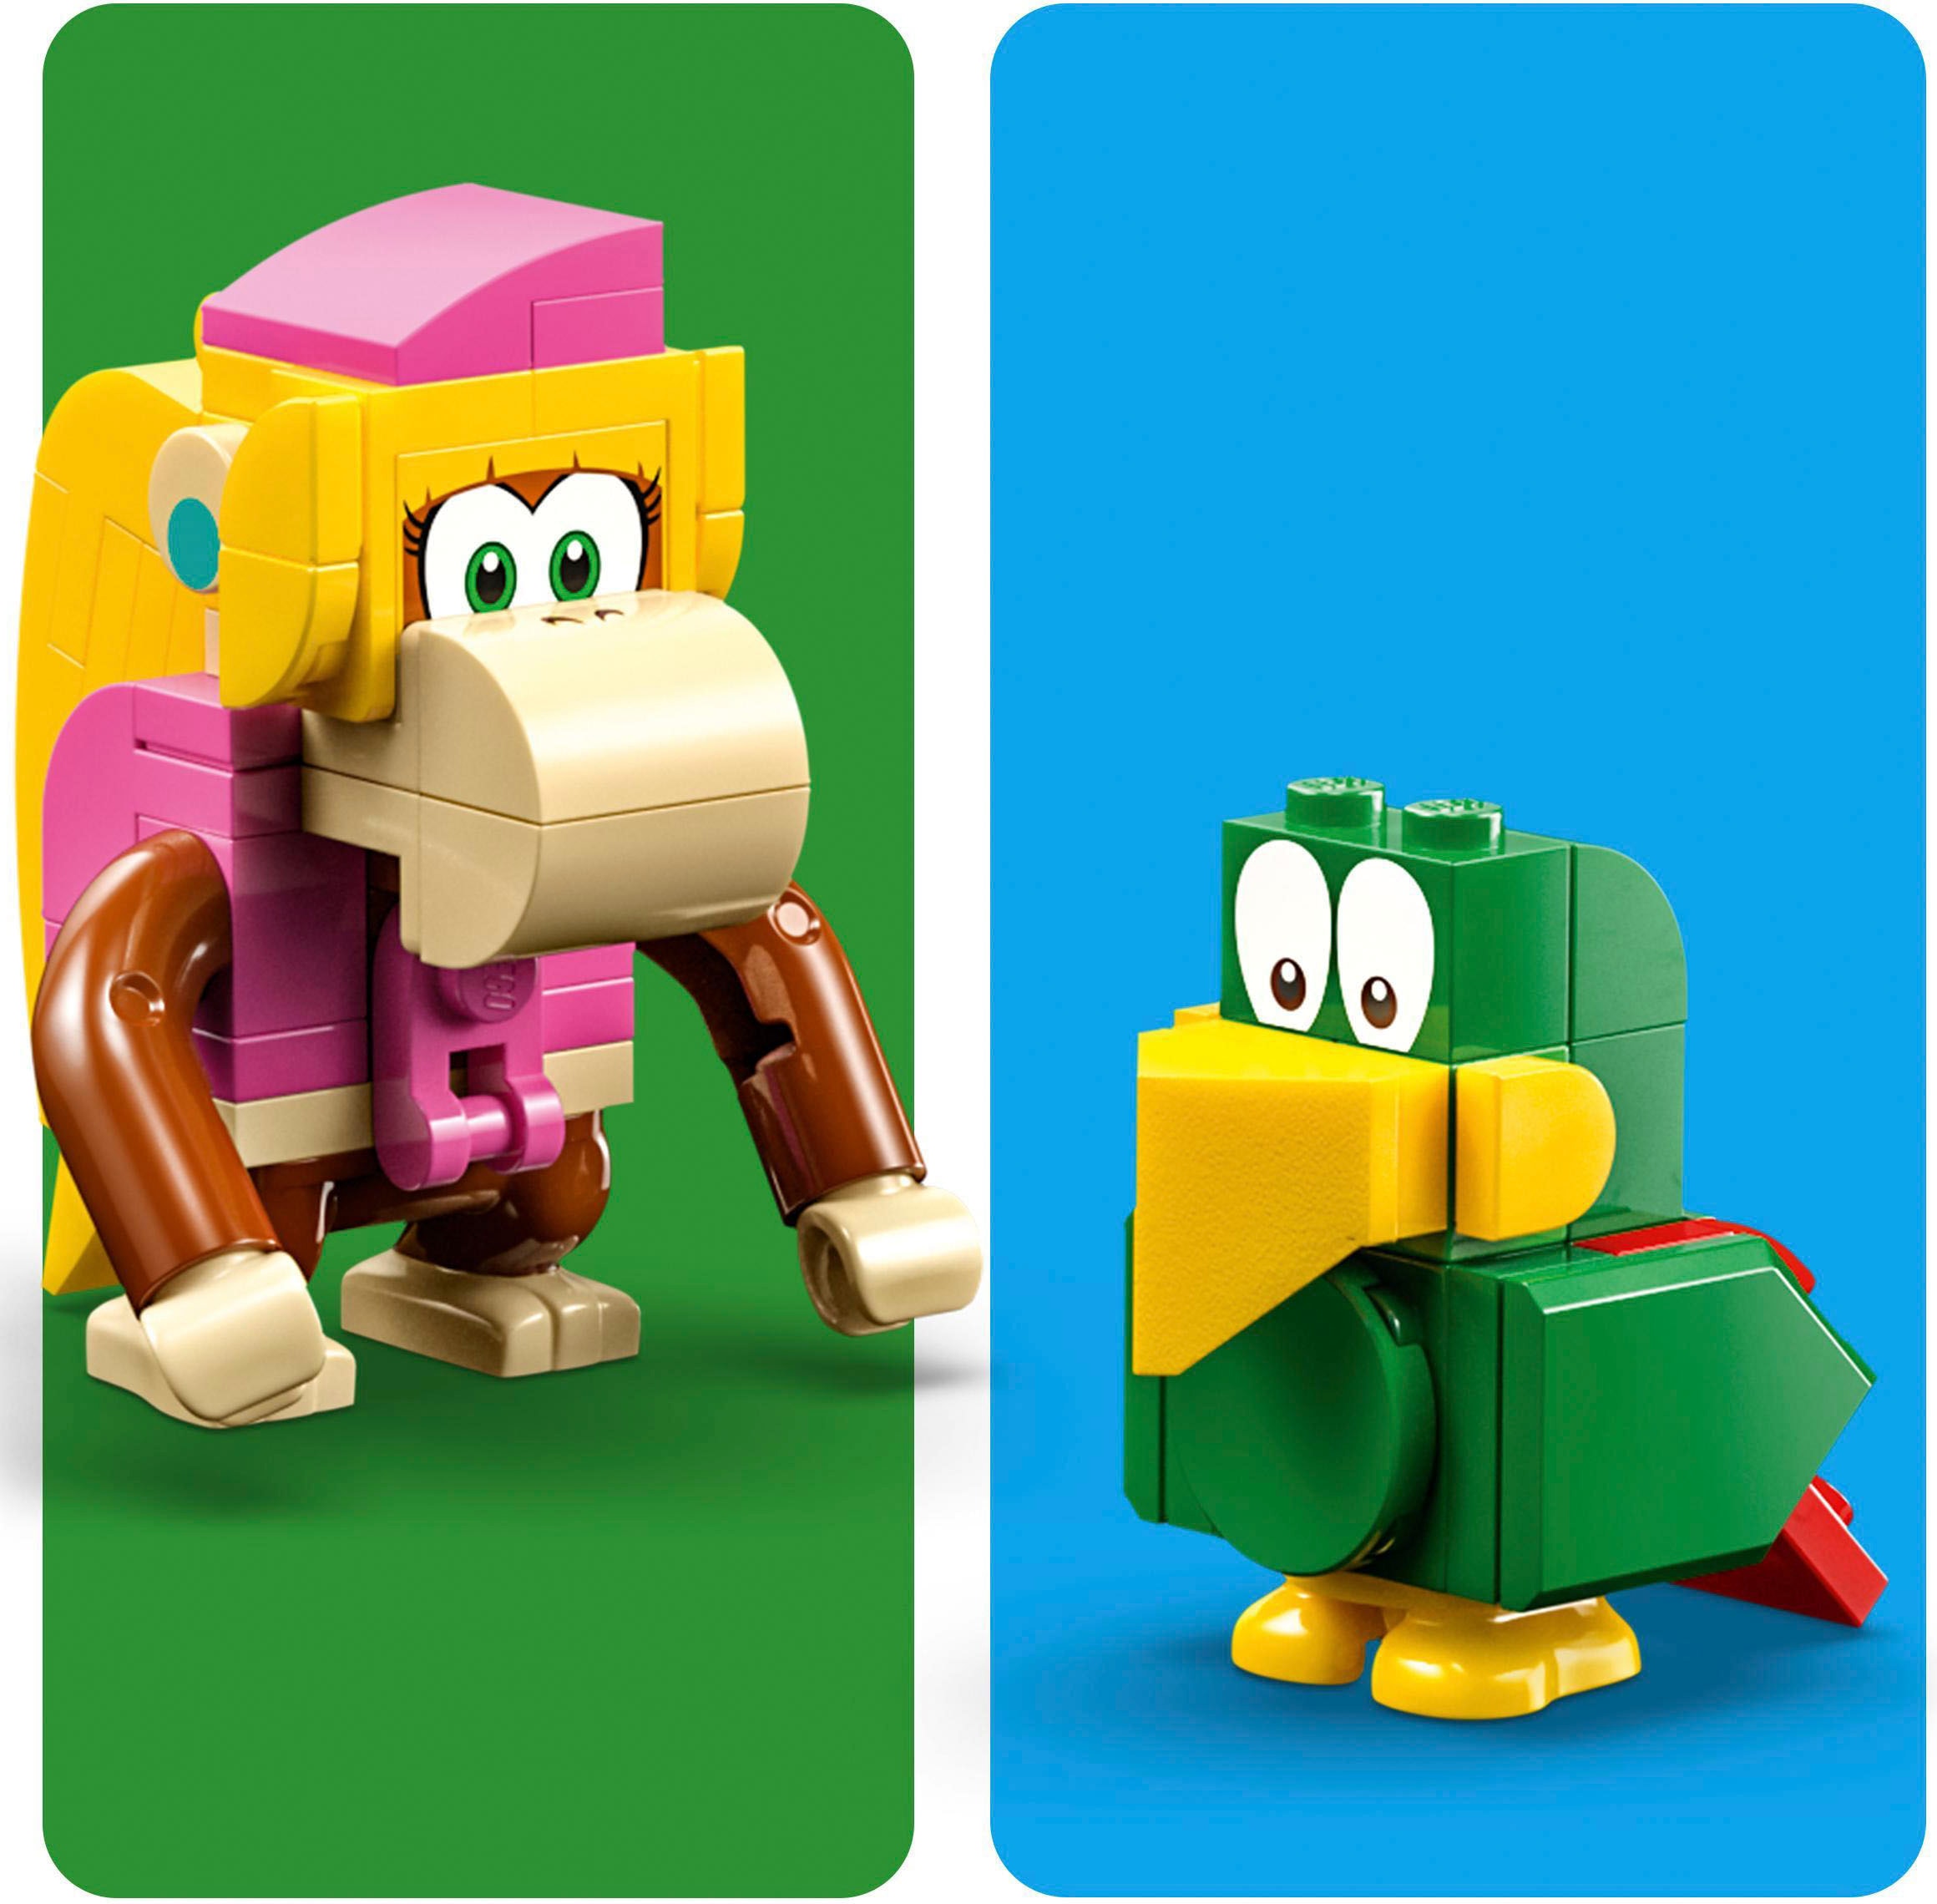 LEGO® Konstruktionsspielsteine »Dixie Kongs Dschungel-Jam – Erweiterungsset (71421), LEGO® Super Mario«, (174 St.), Made in Europe